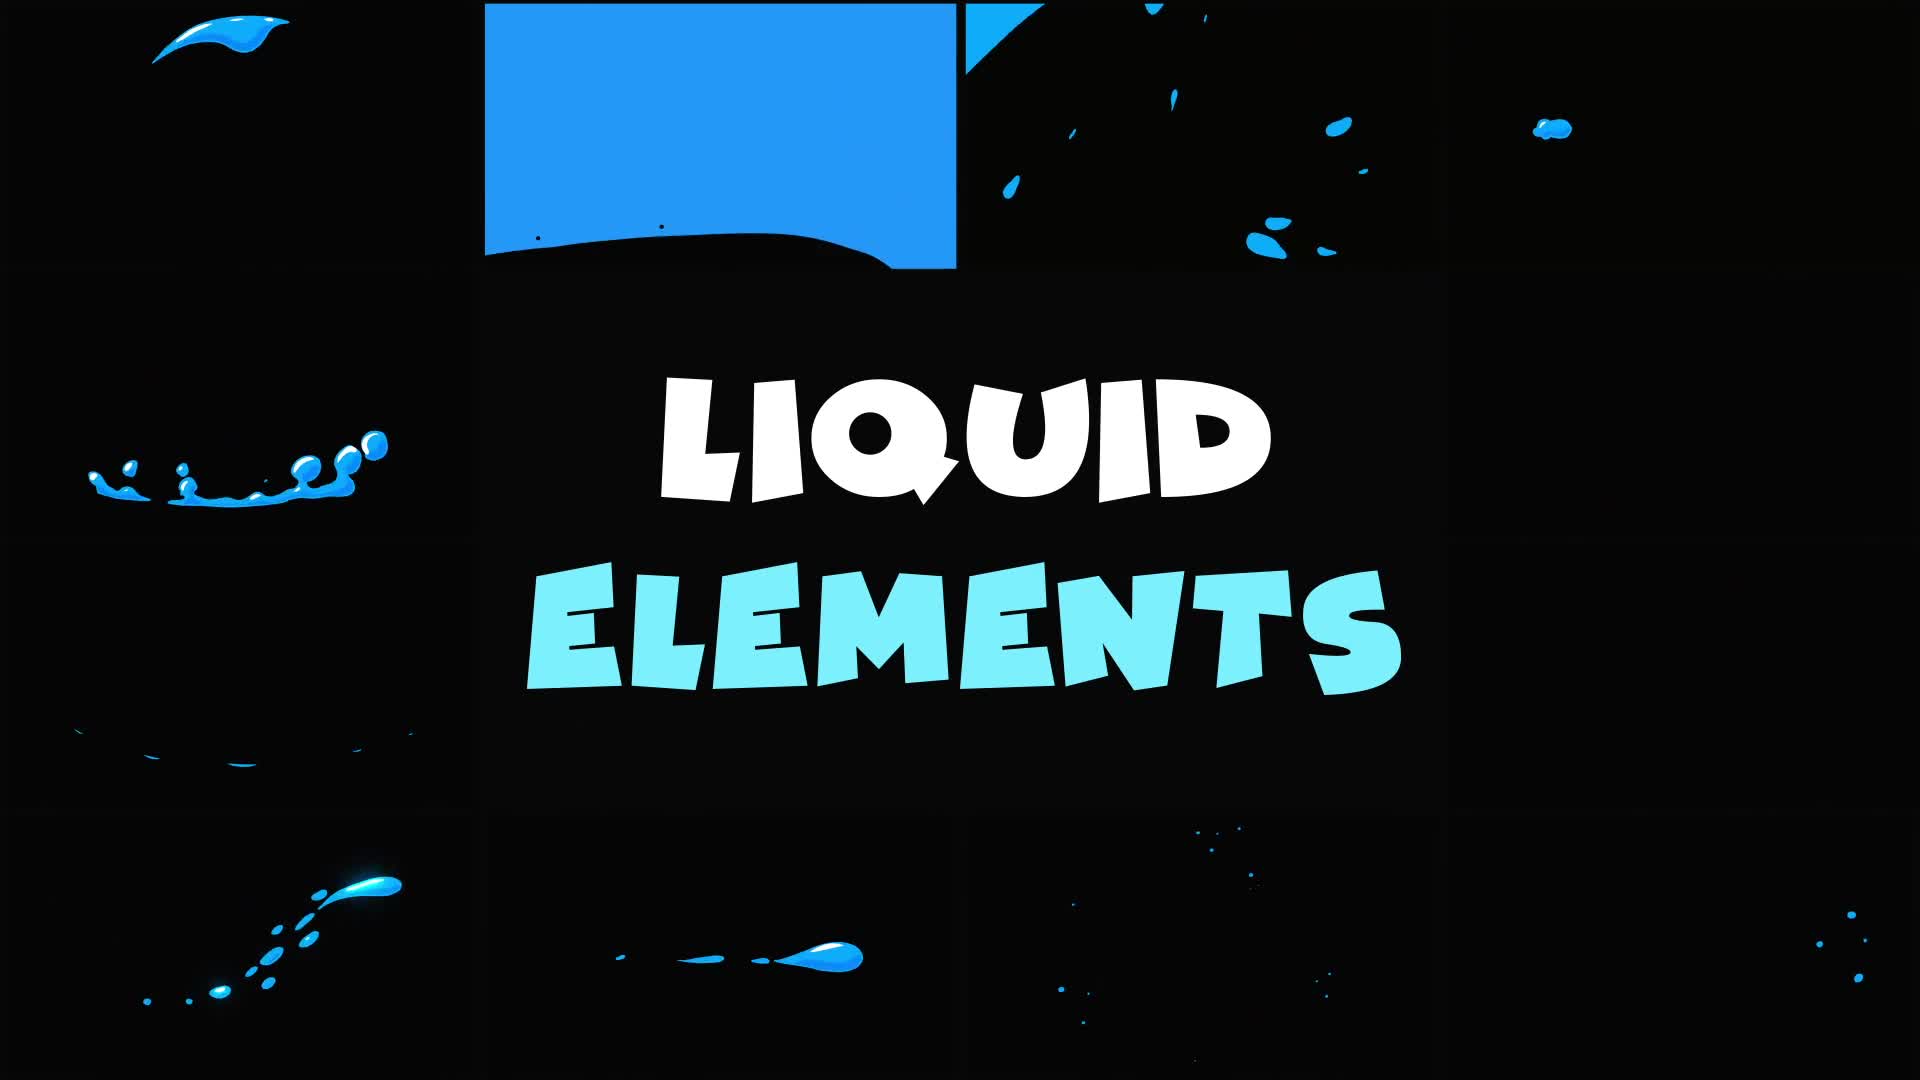 Liquid Elements | Premiere Pro MOGRT Videohive 34031052 Premiere Pro Image 1